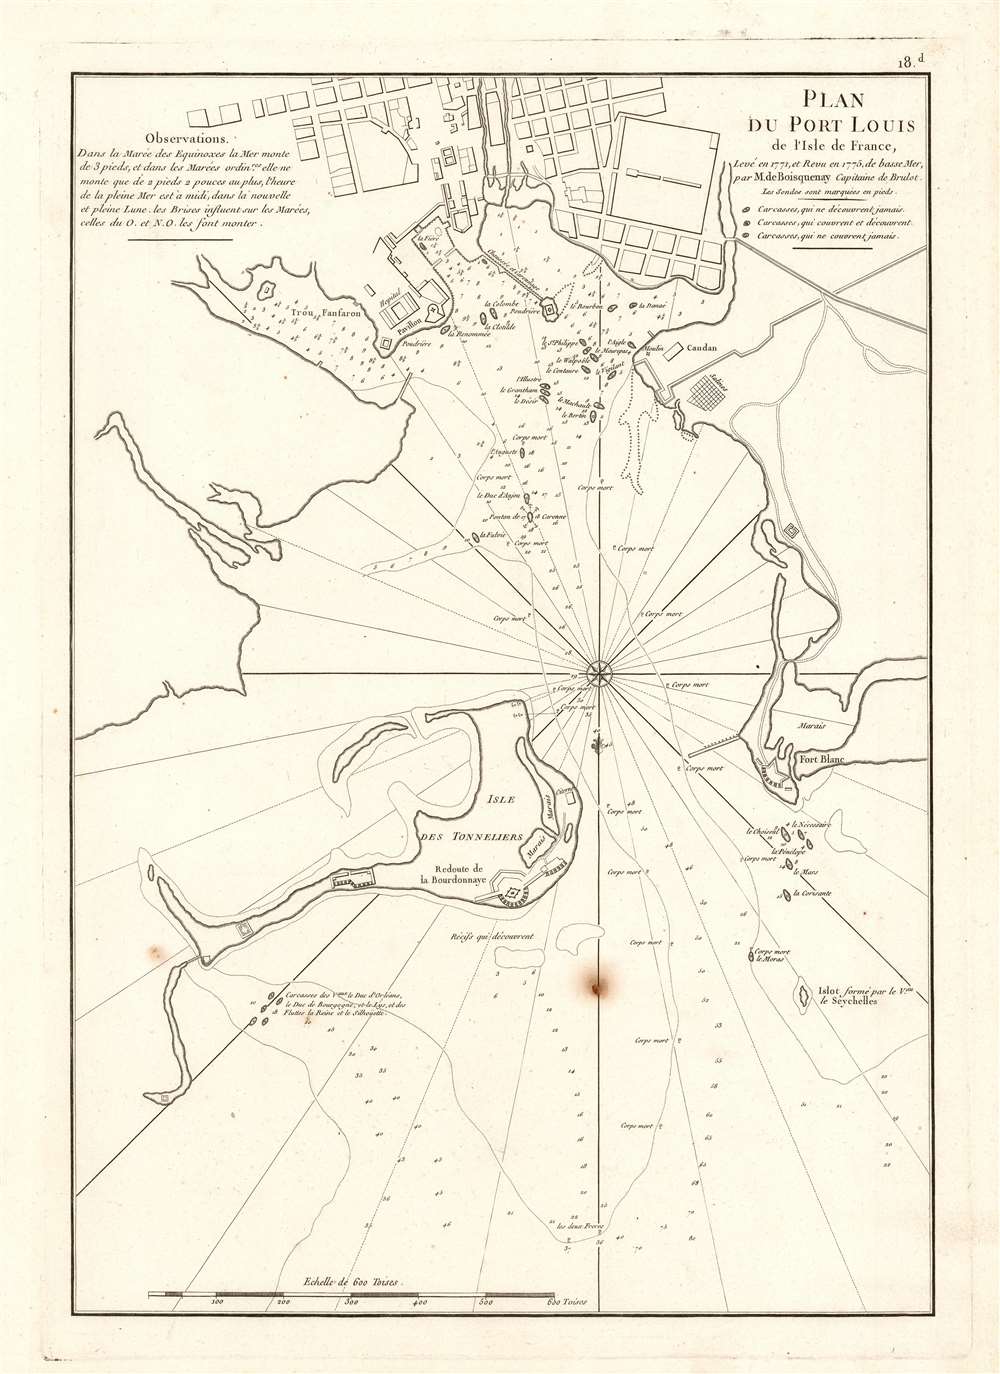 1775 Mannevillette Harbor Chart of Port Louis, Mauritius